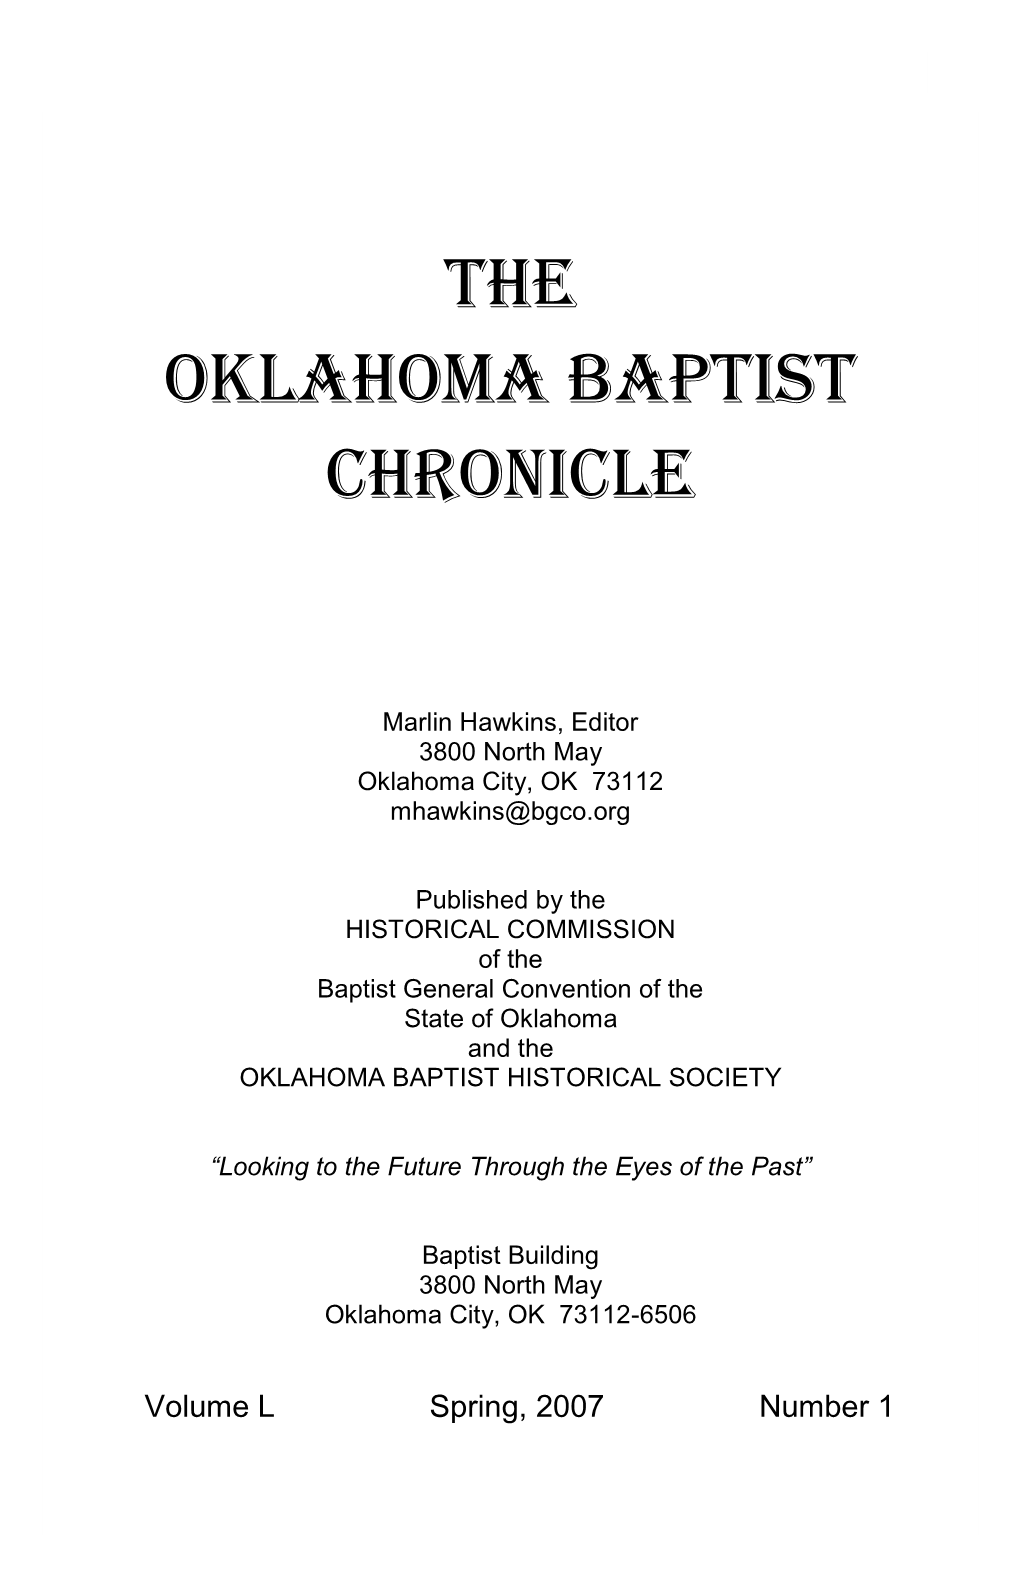 The Oklahoma Baptist Chronicle